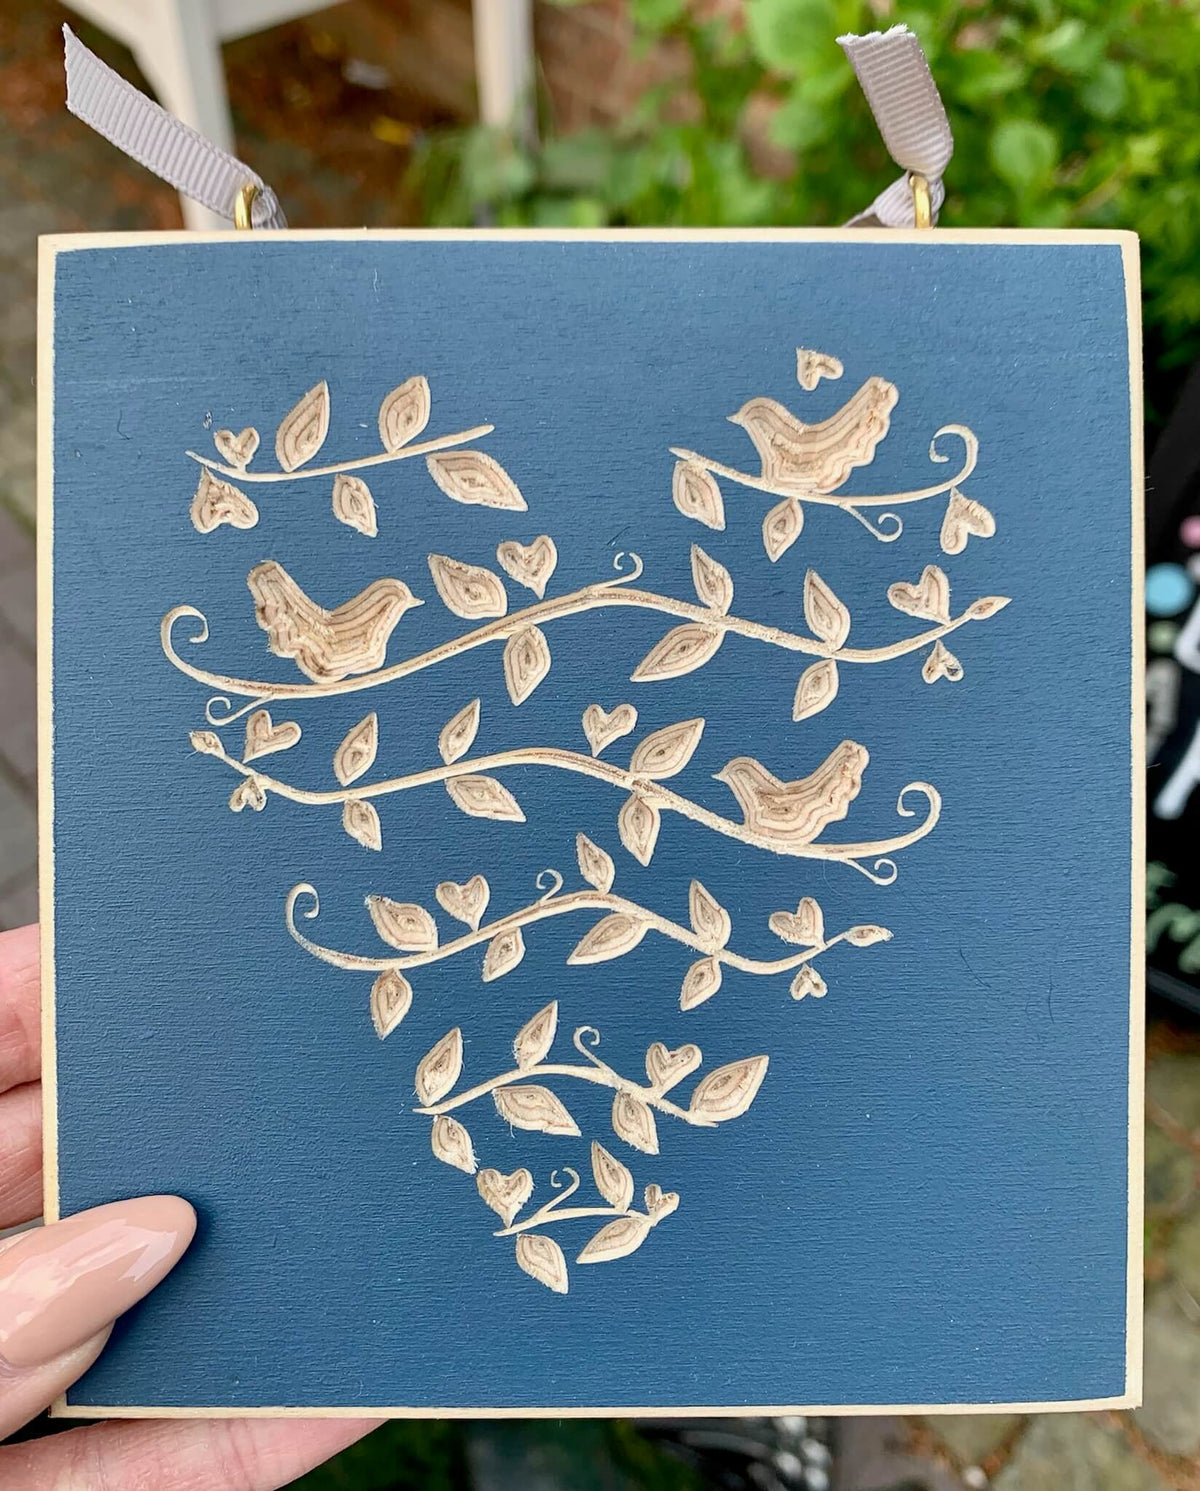 Handmade wooden heart and bird plaque - Midnight blue